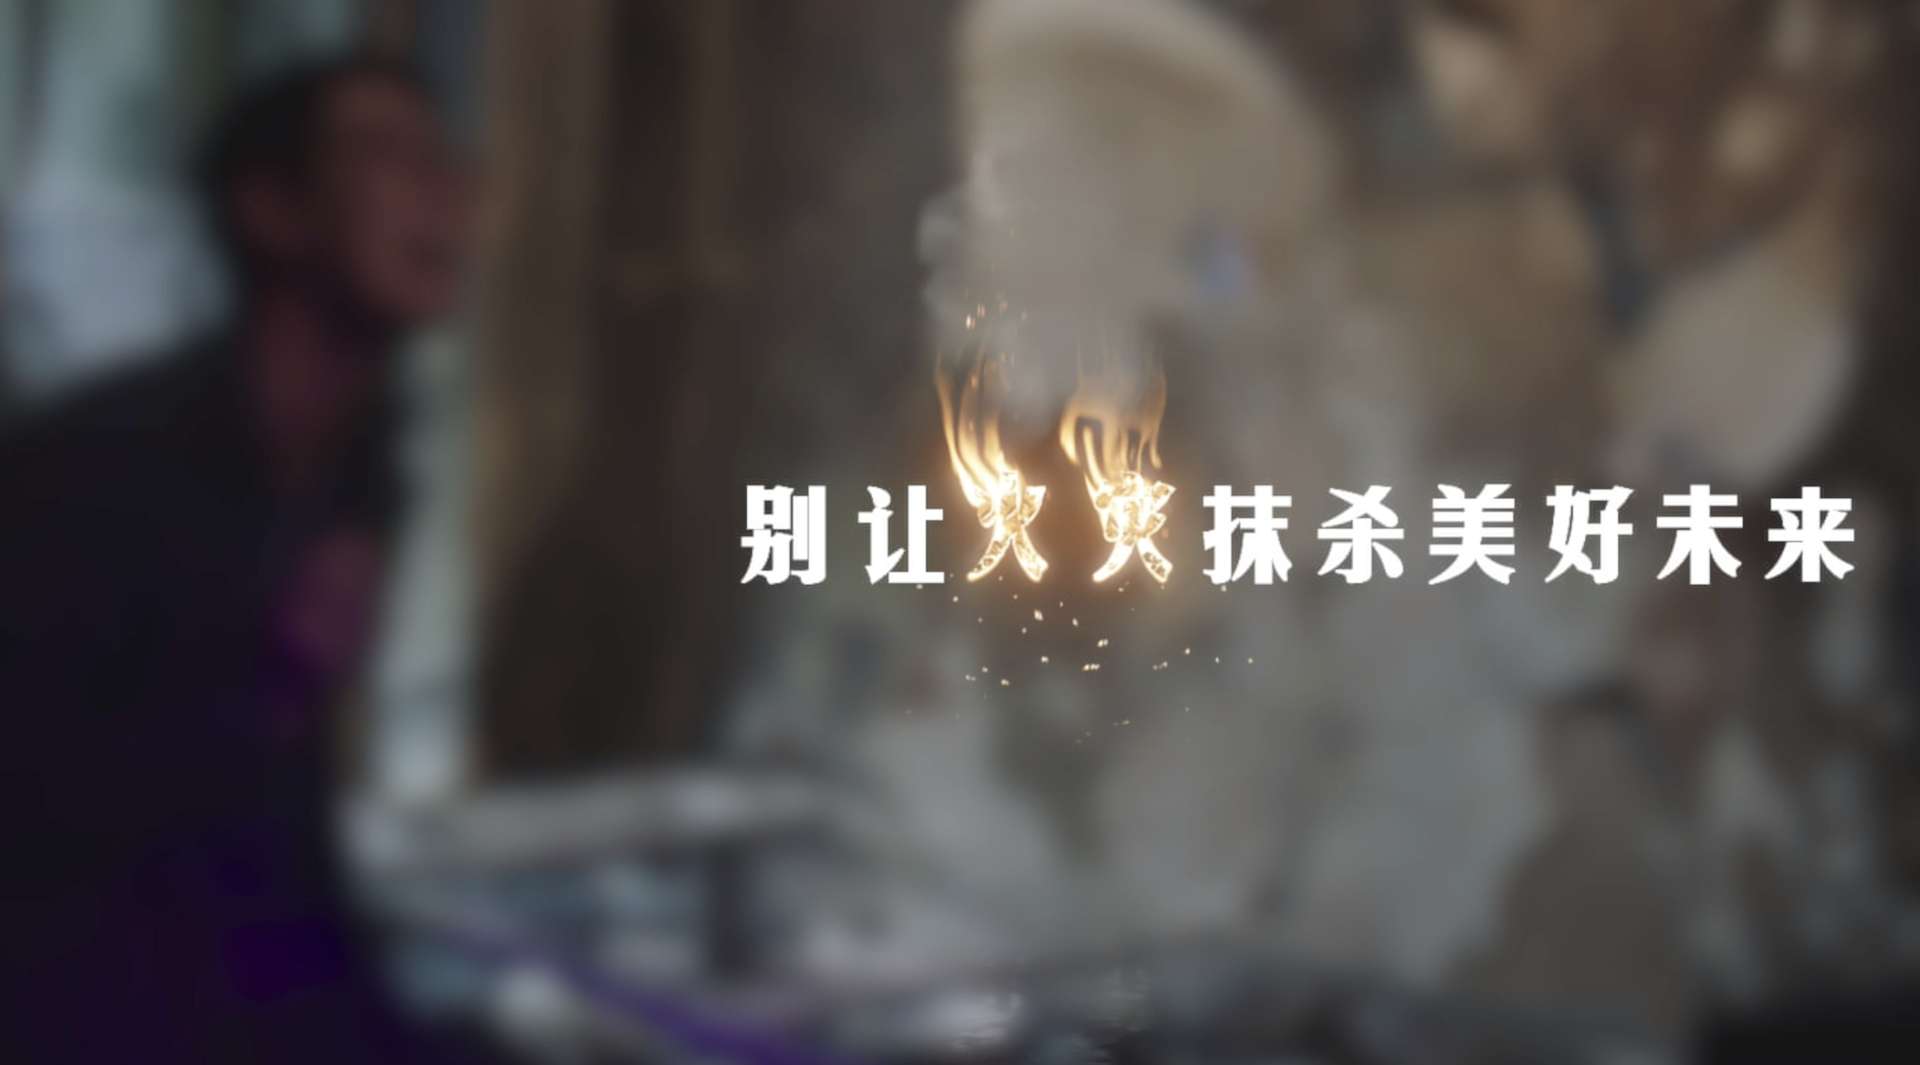 陕西消防总队公益广告《别让火灾抹杀美好未来》导演剪辑版